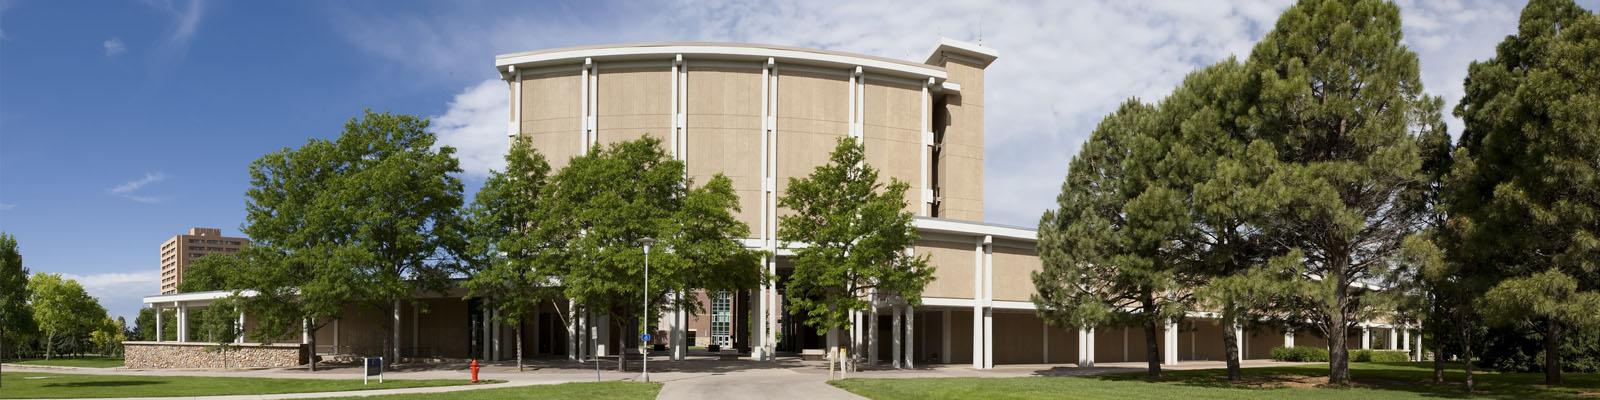 McKee Hall on UNC Campus